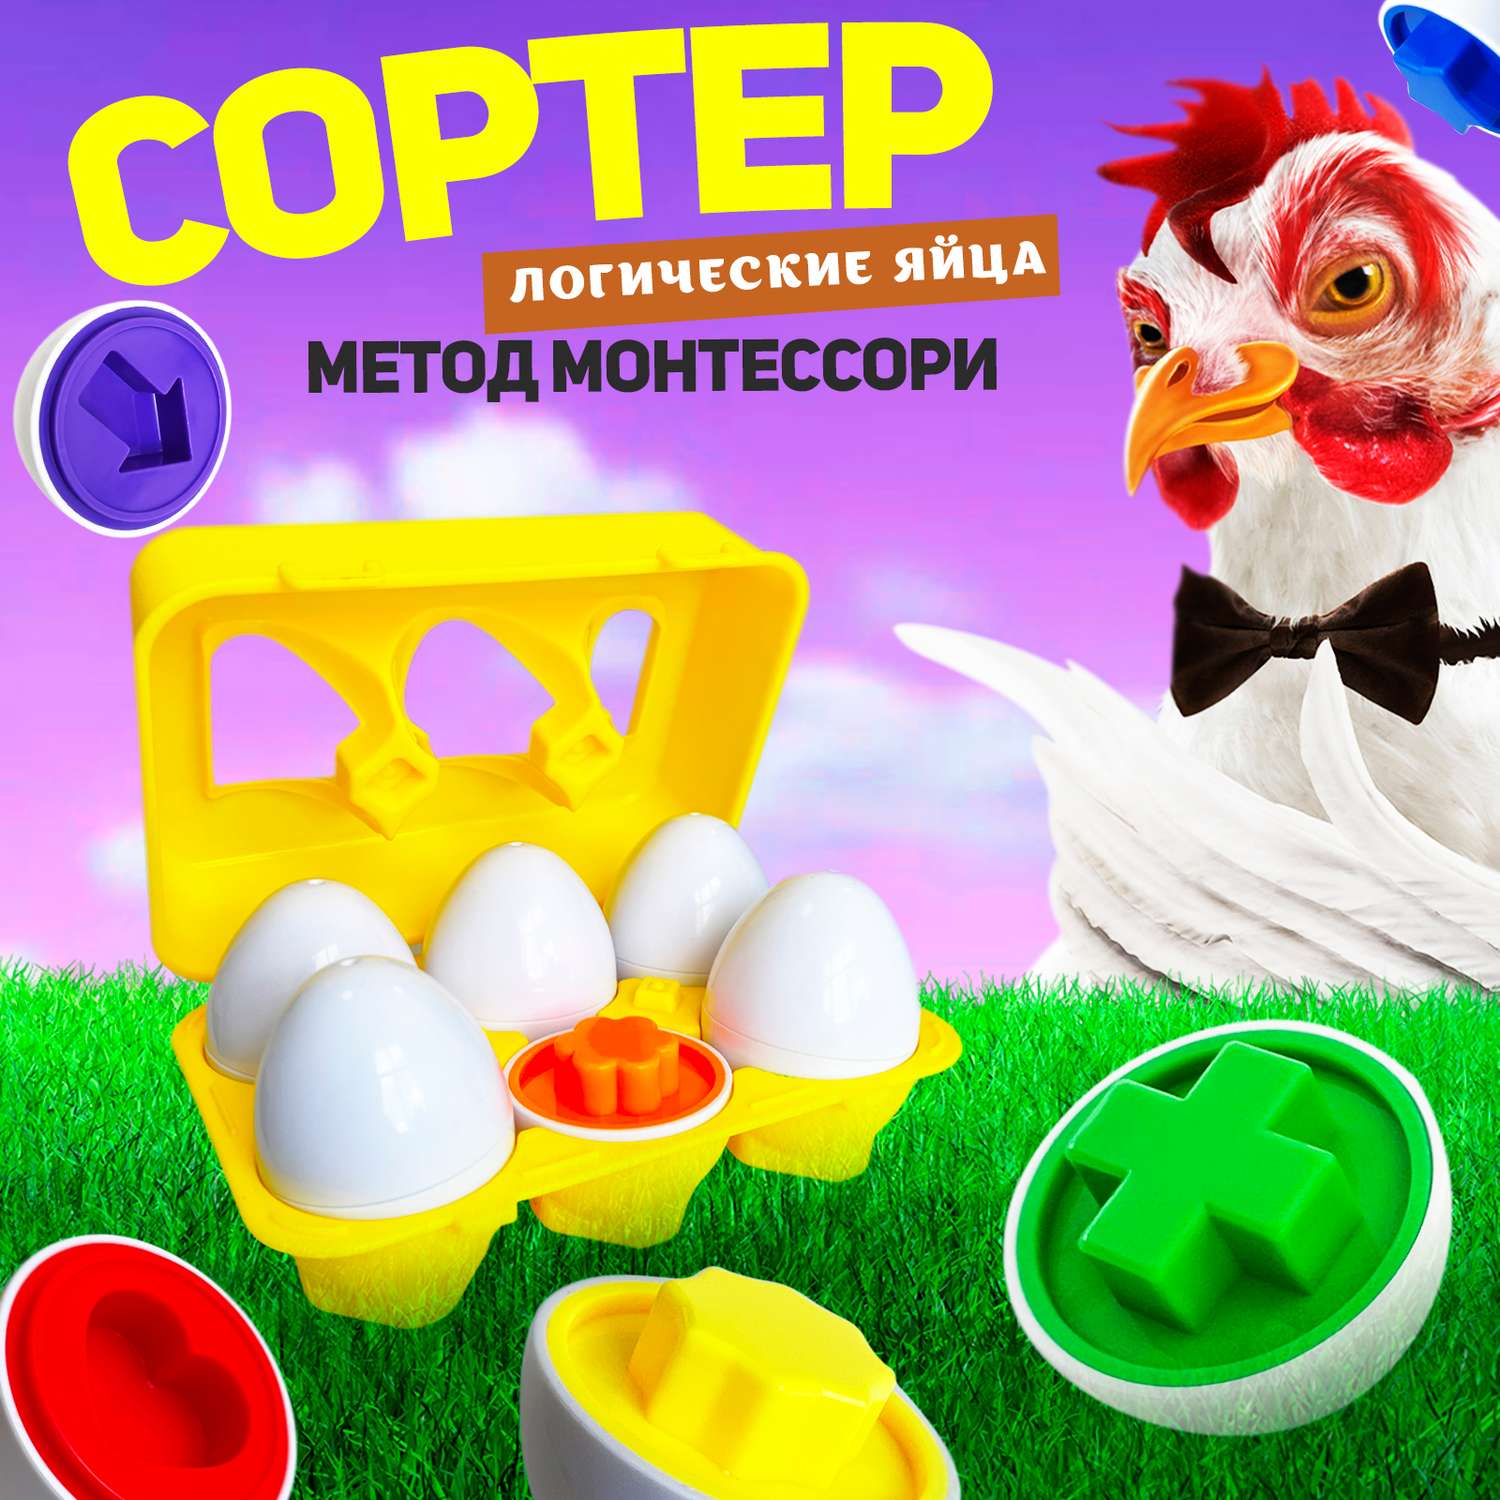 Развивающий сортер для малышей MINI-TOYS Логические яйца 6 шт/ Игрушка для детей по методике Монтессори - фото 1